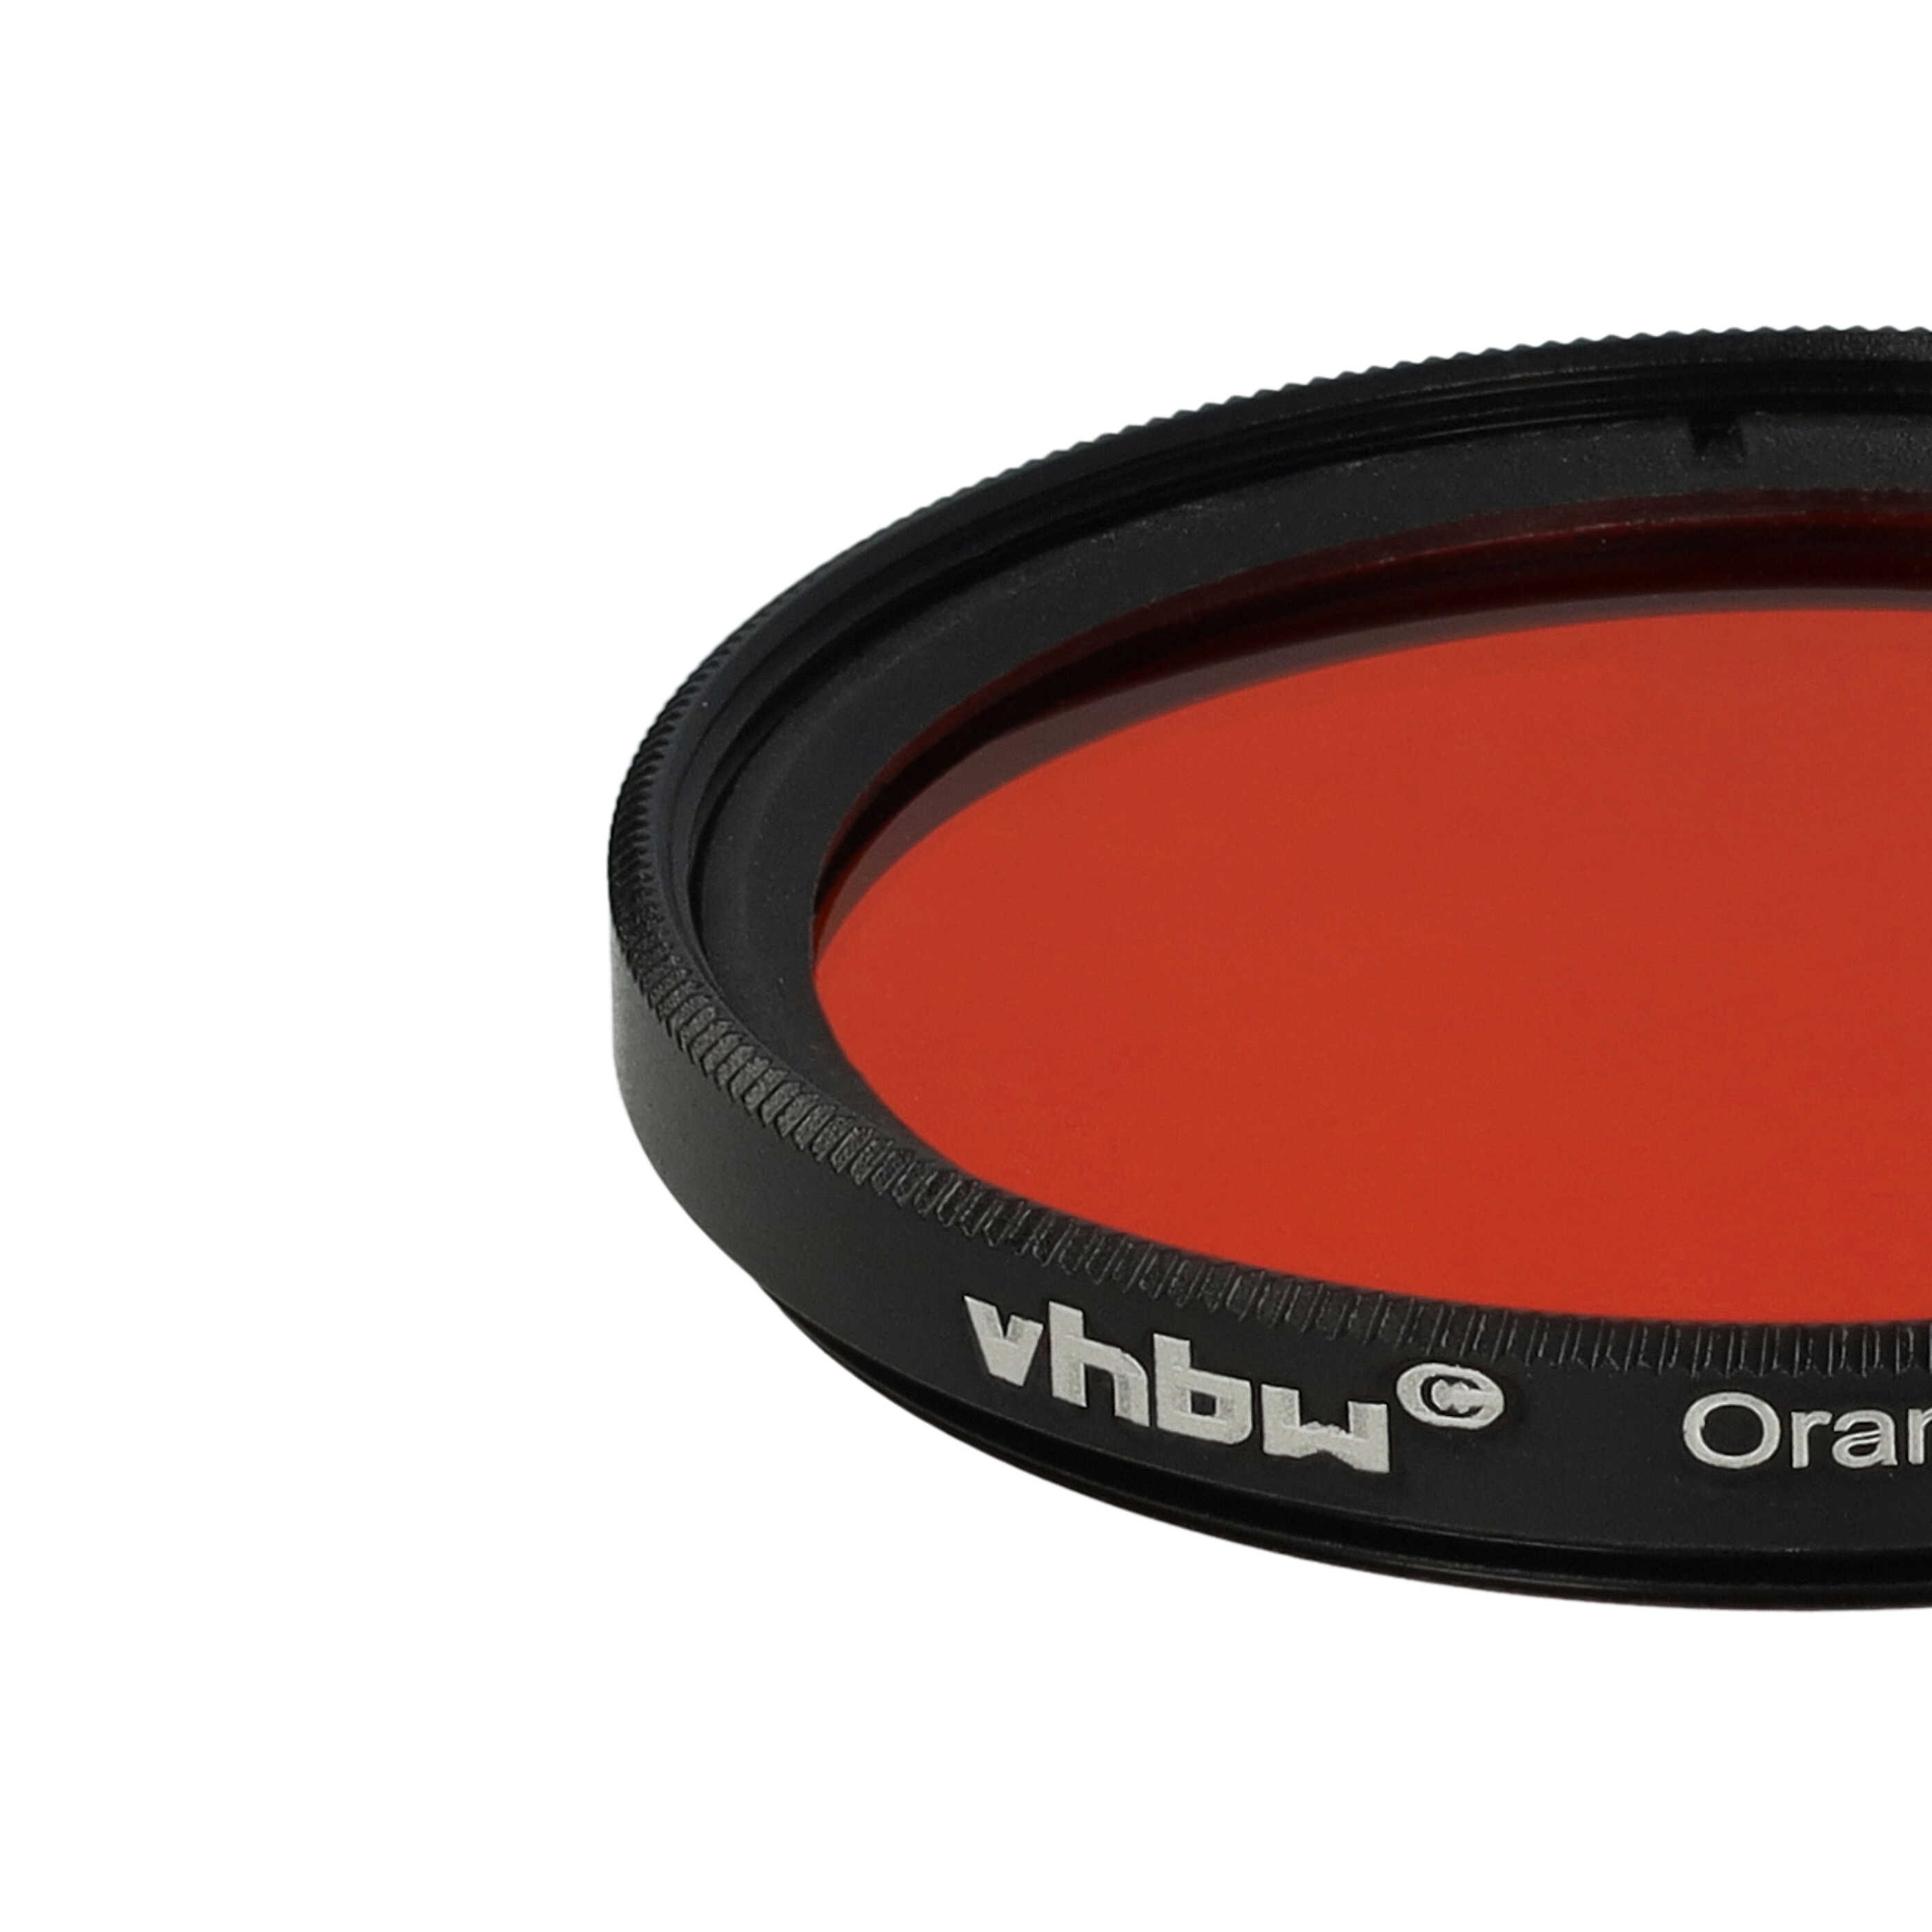 Farbfilter orange passend für Kamera Objektive mit 43 mm Filtergewinde - Orangefilter